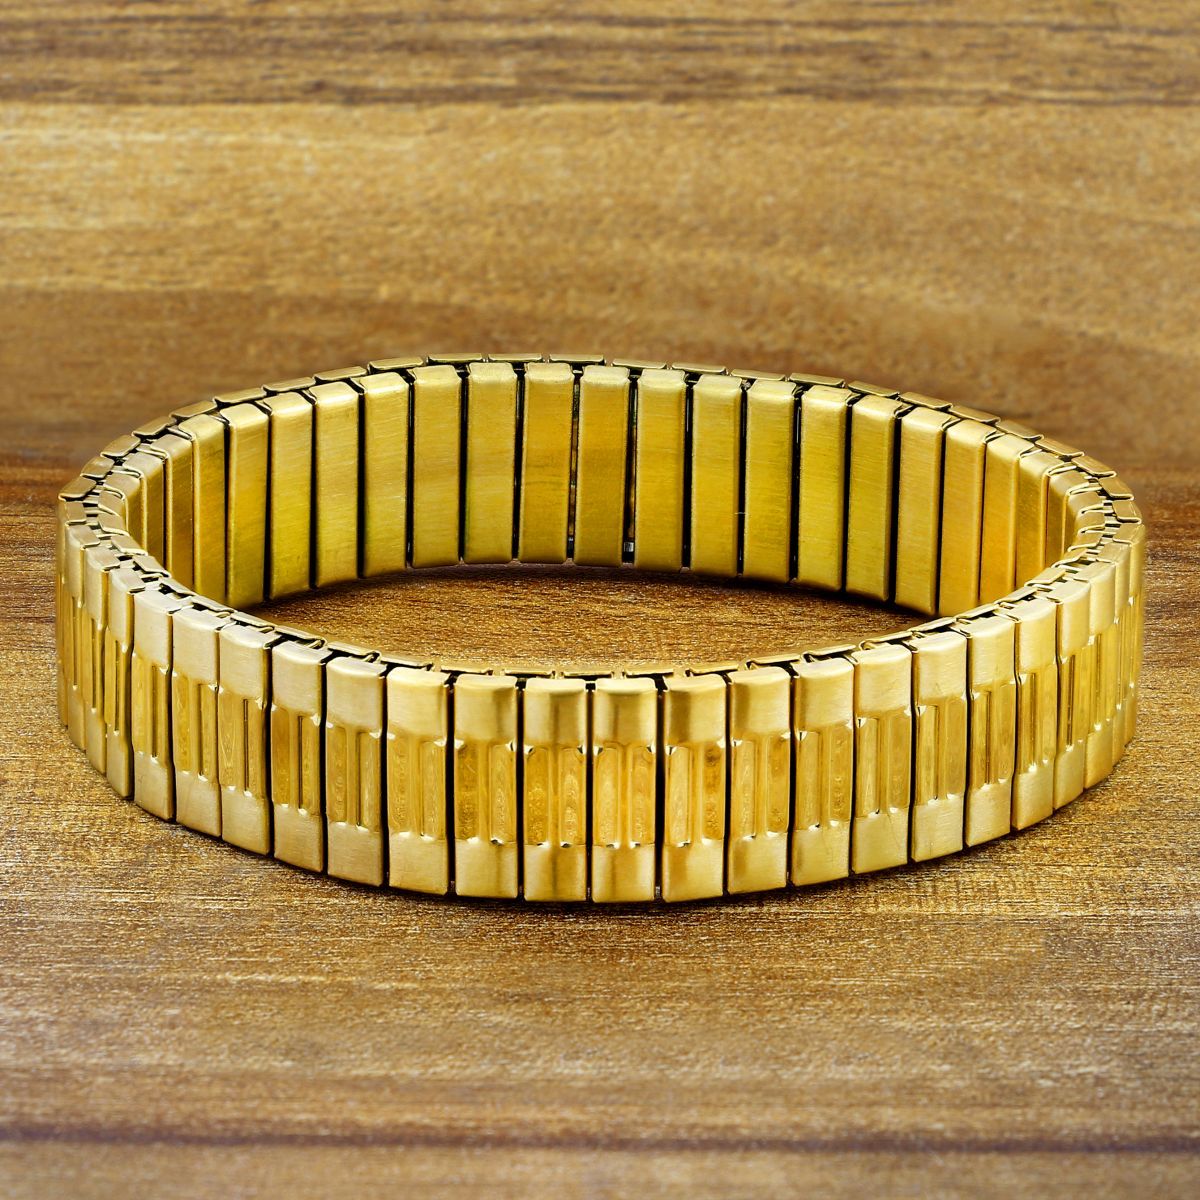 Wrist watch bracelet, 18K gold c30g. - Bukowskis